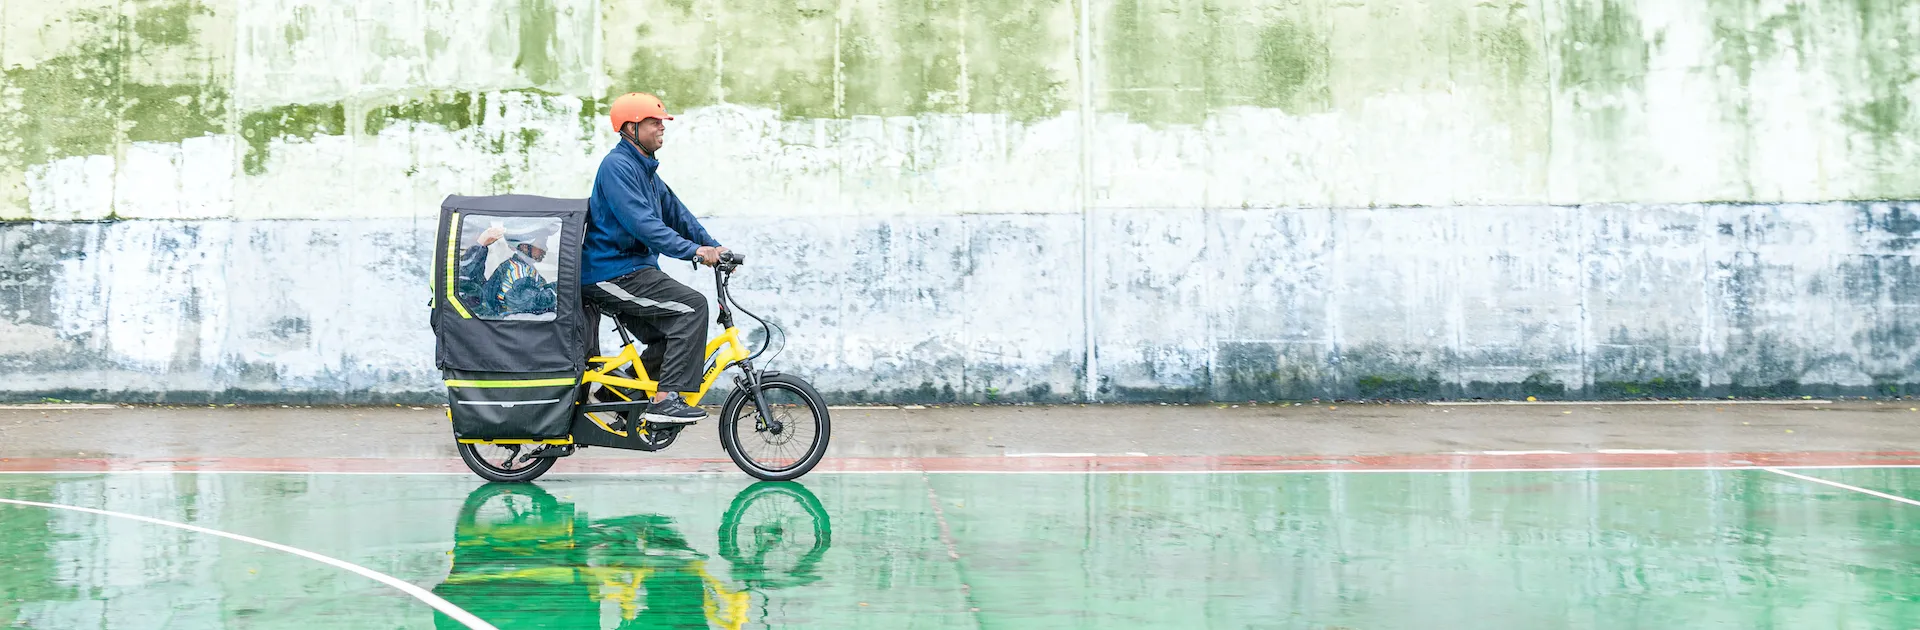 11 Expert Tips for E-Biking in the Rain